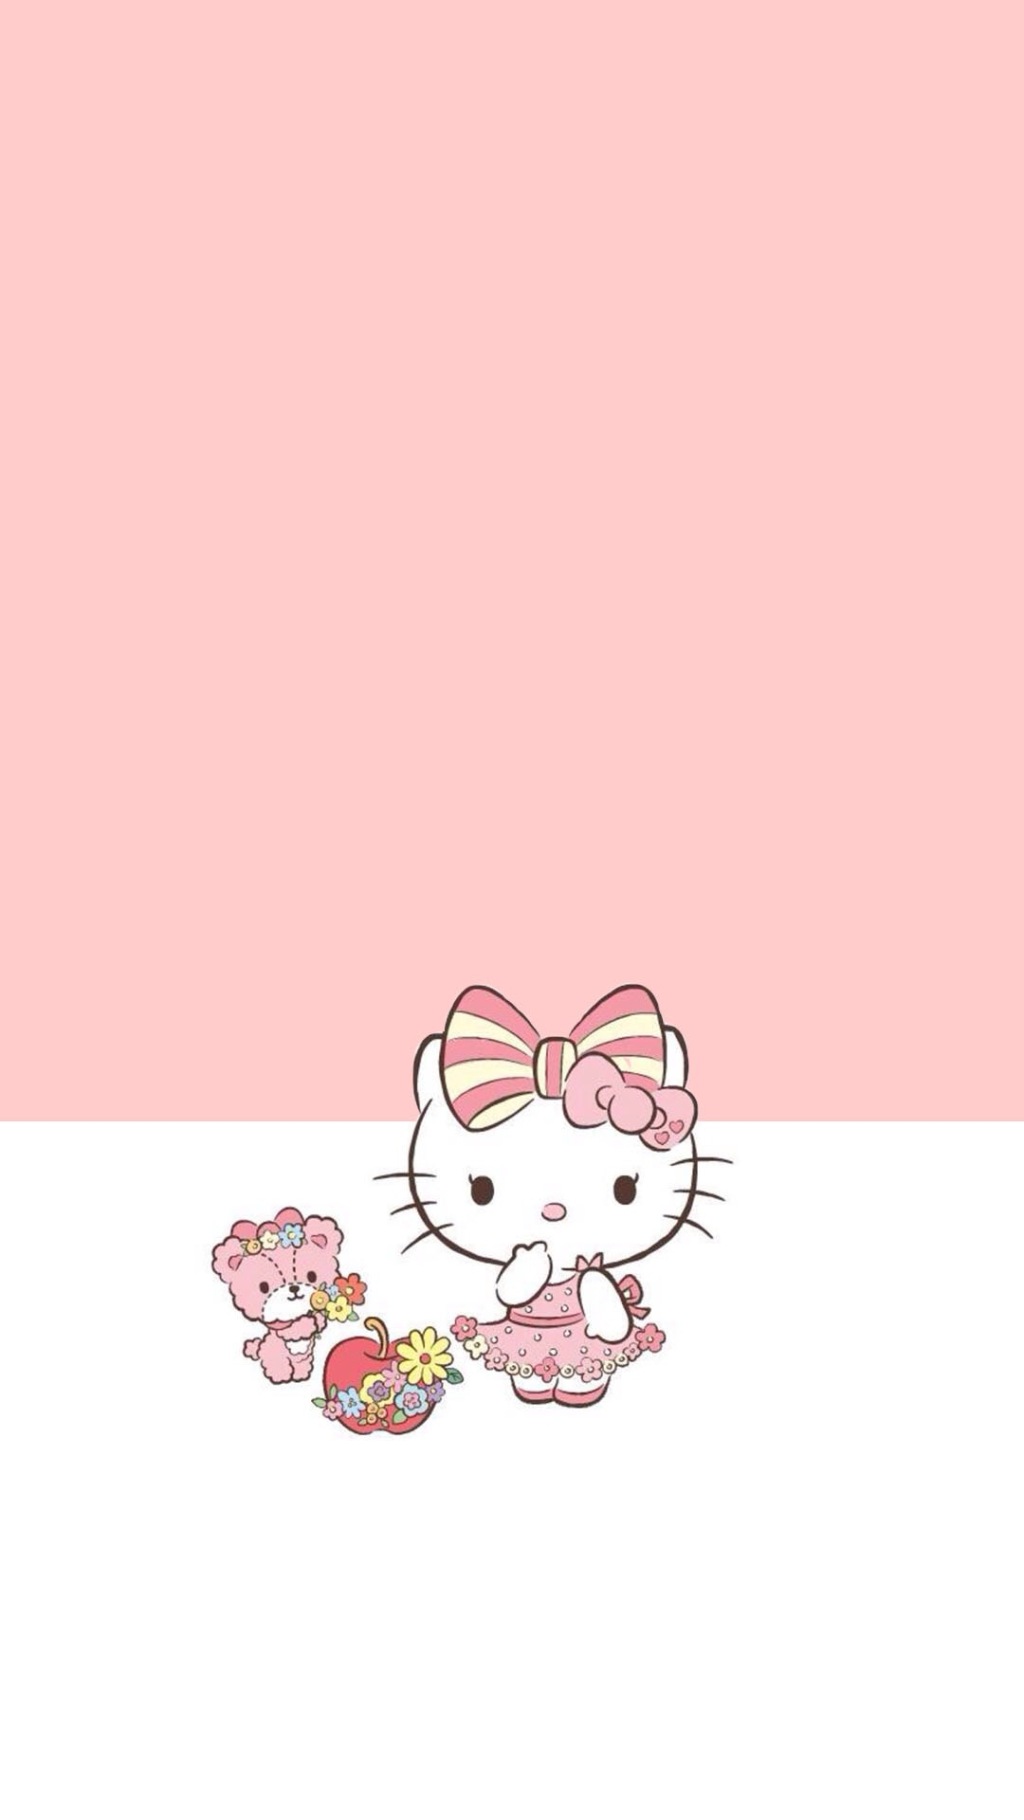 Hello Kitty手机壁纸粉色可爱hellokitty手机主题壁纸 手机壁纸 优美图